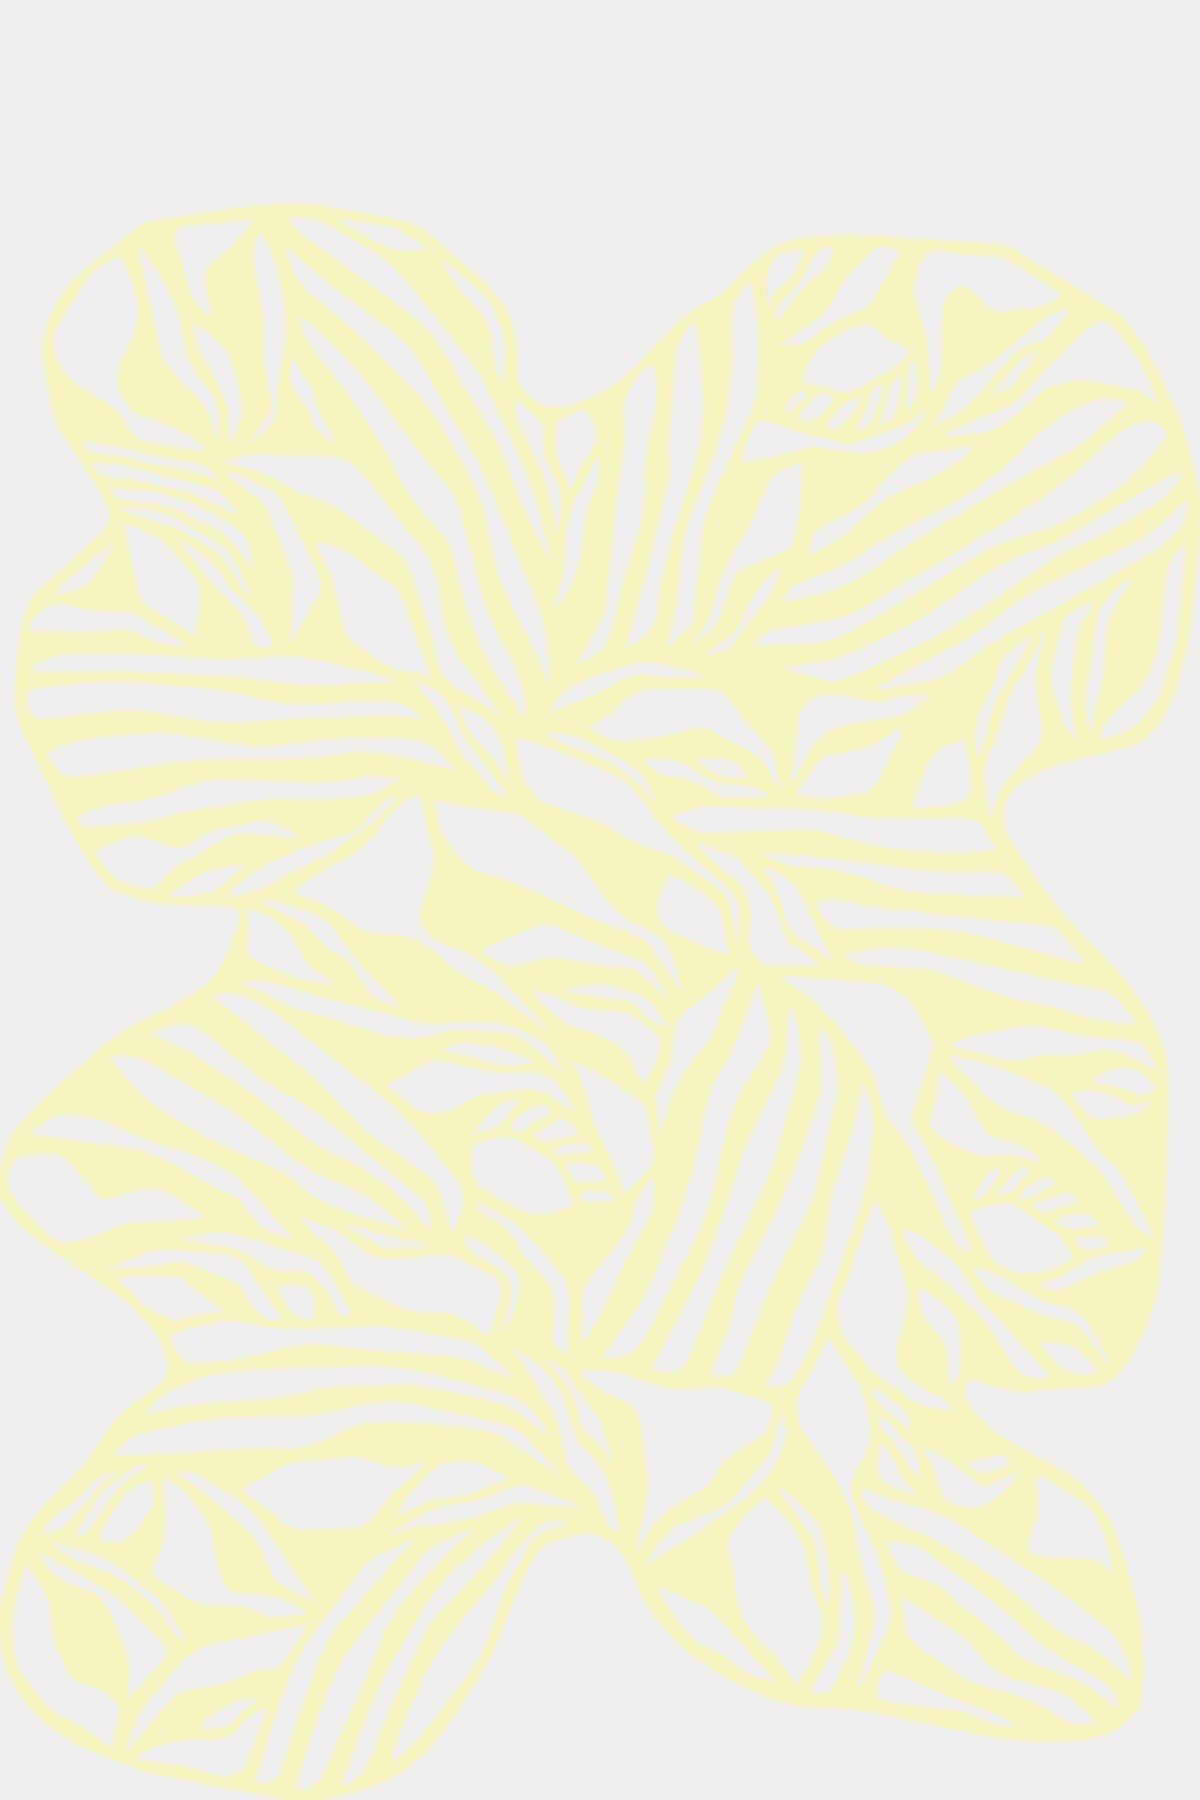 Studio over PaperCut A4 organische rechthoek, geel